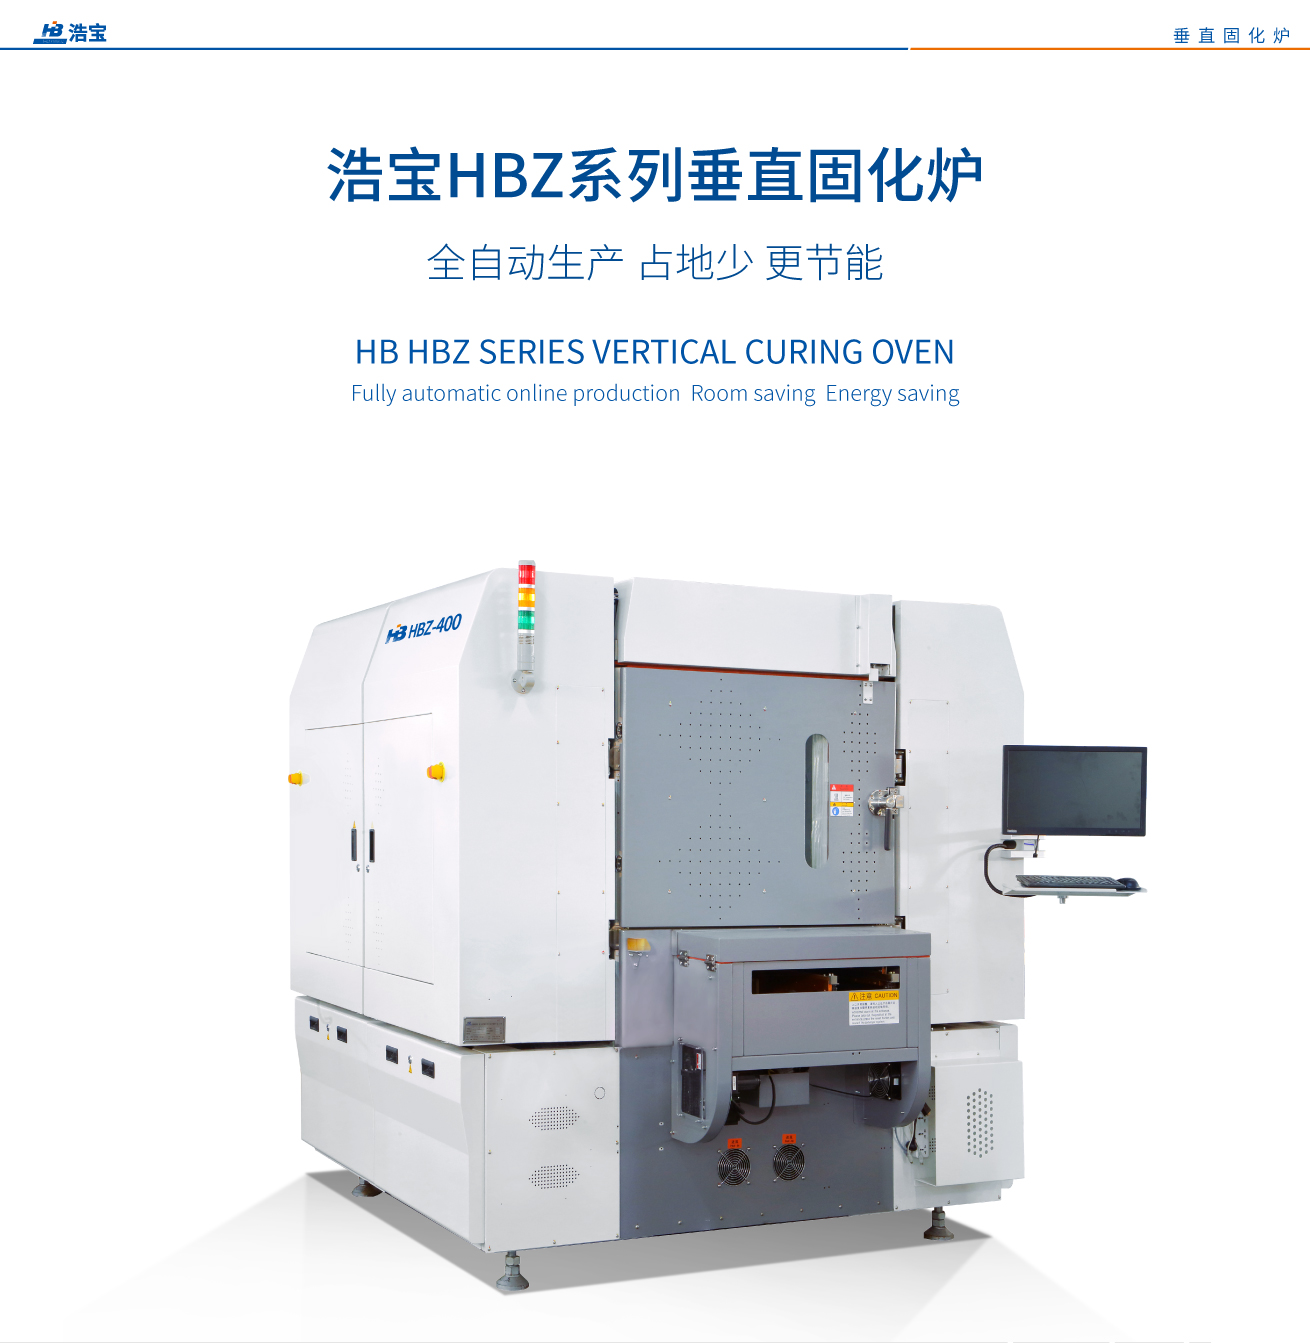 江南JN中国体育官方网站HBZ-400全自动在线垂直固化炉介绍